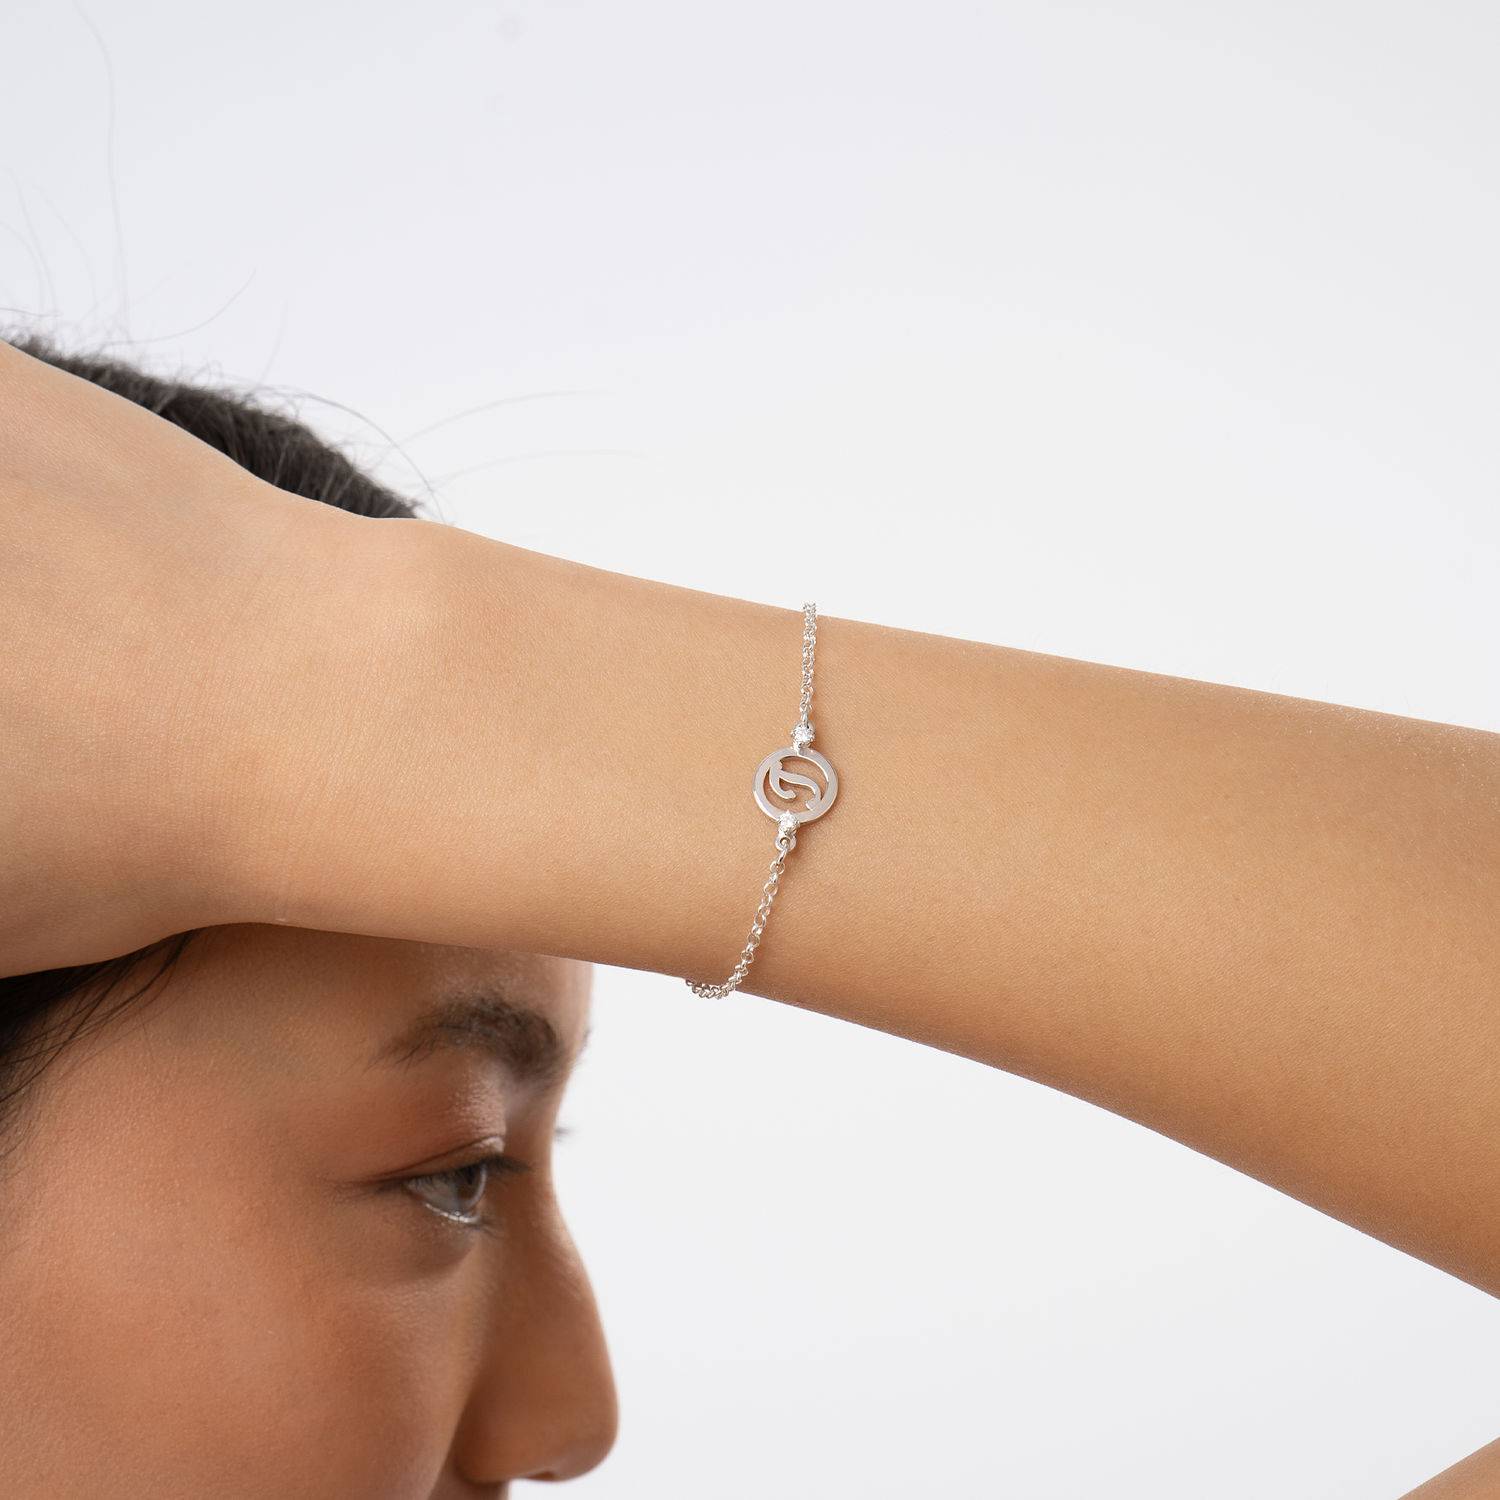 Gloriaformat initialarmband i sterlingsilver med diamanter-3 produktbilder